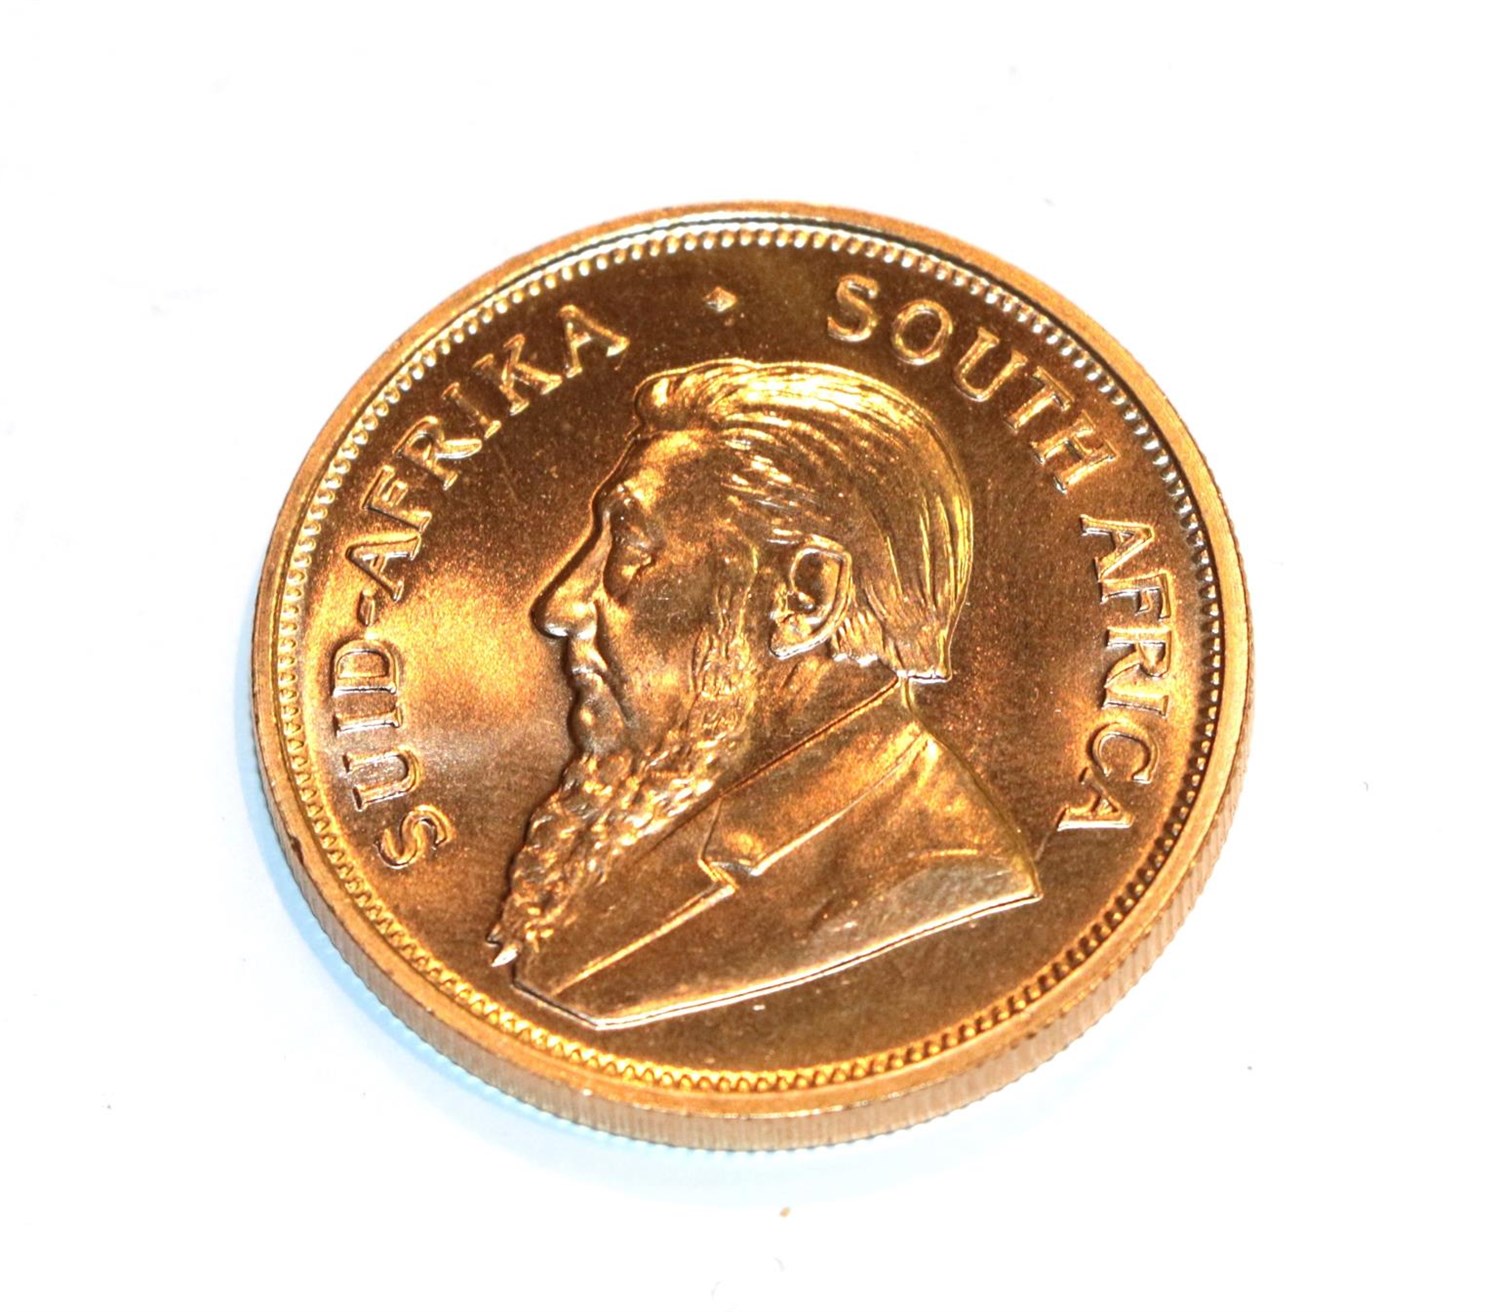 Lot 115 - South Africa, 1974 Krugerrand. 1 oz. fine gold (.999). Obv: Bust of Paul Kruger left. Rev:...